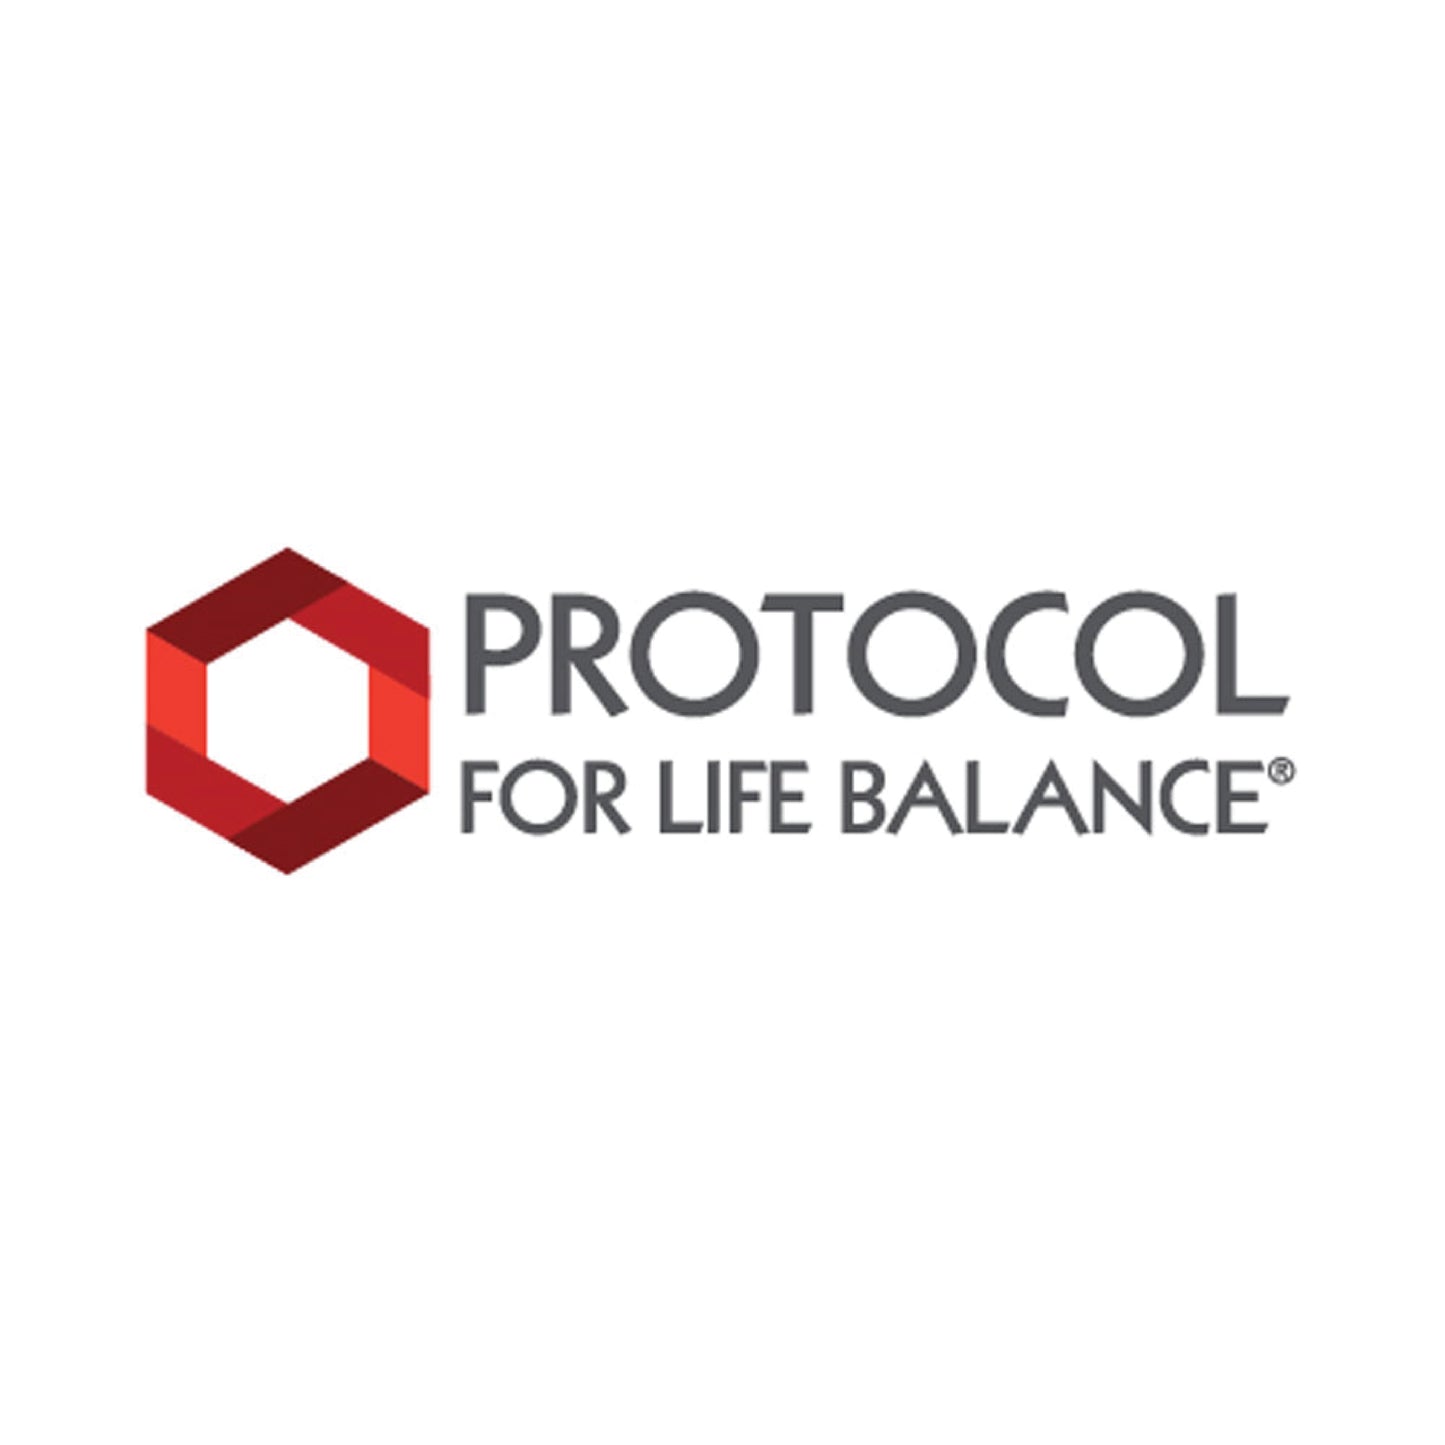 Protocol for Life Balance, Iron, High Potency, 36 mg, 90 Veg Capsules - Bloom Concept